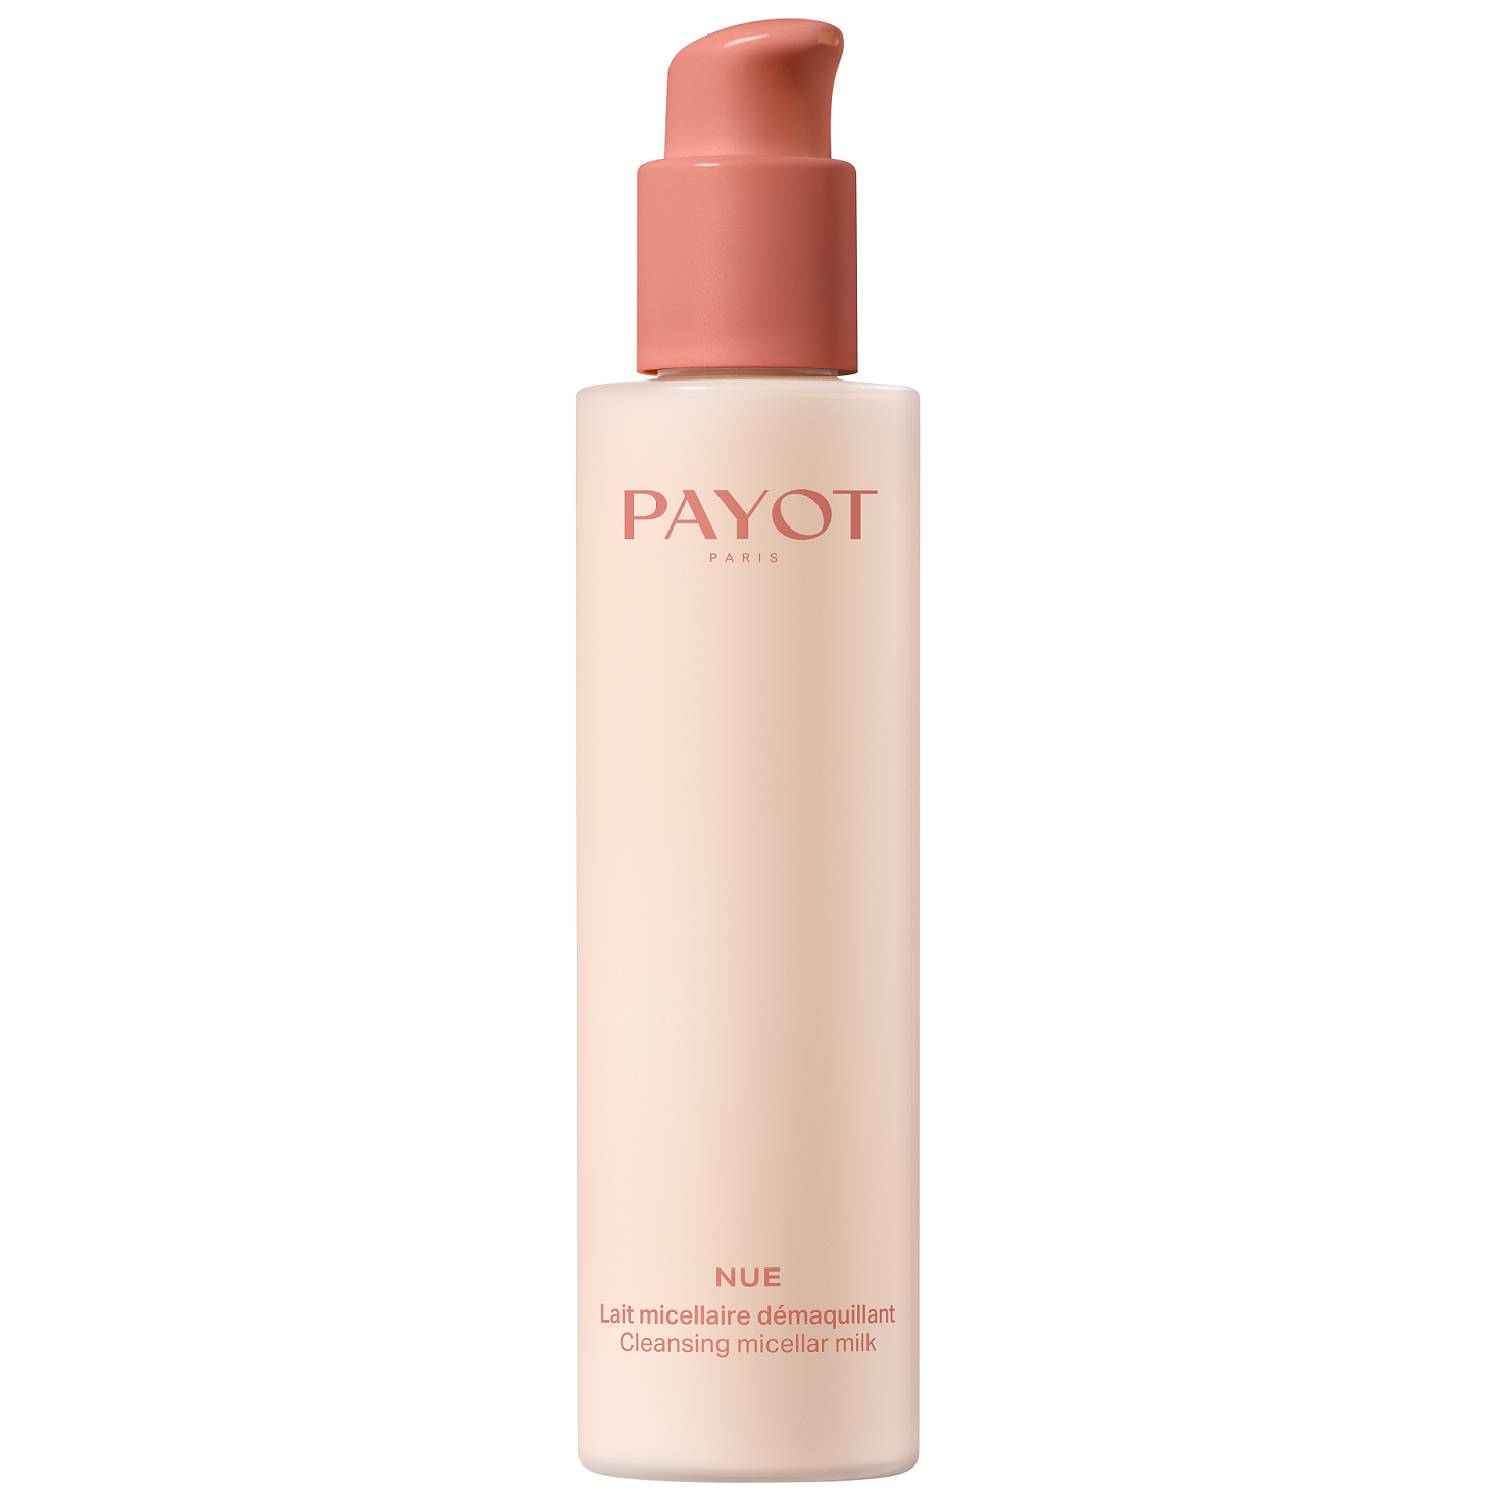 Payot Мицеллярное молочко для снятия макияжа, 200 мл (Payot, Nue) стик для снятия макияжа payot nue 50 гр